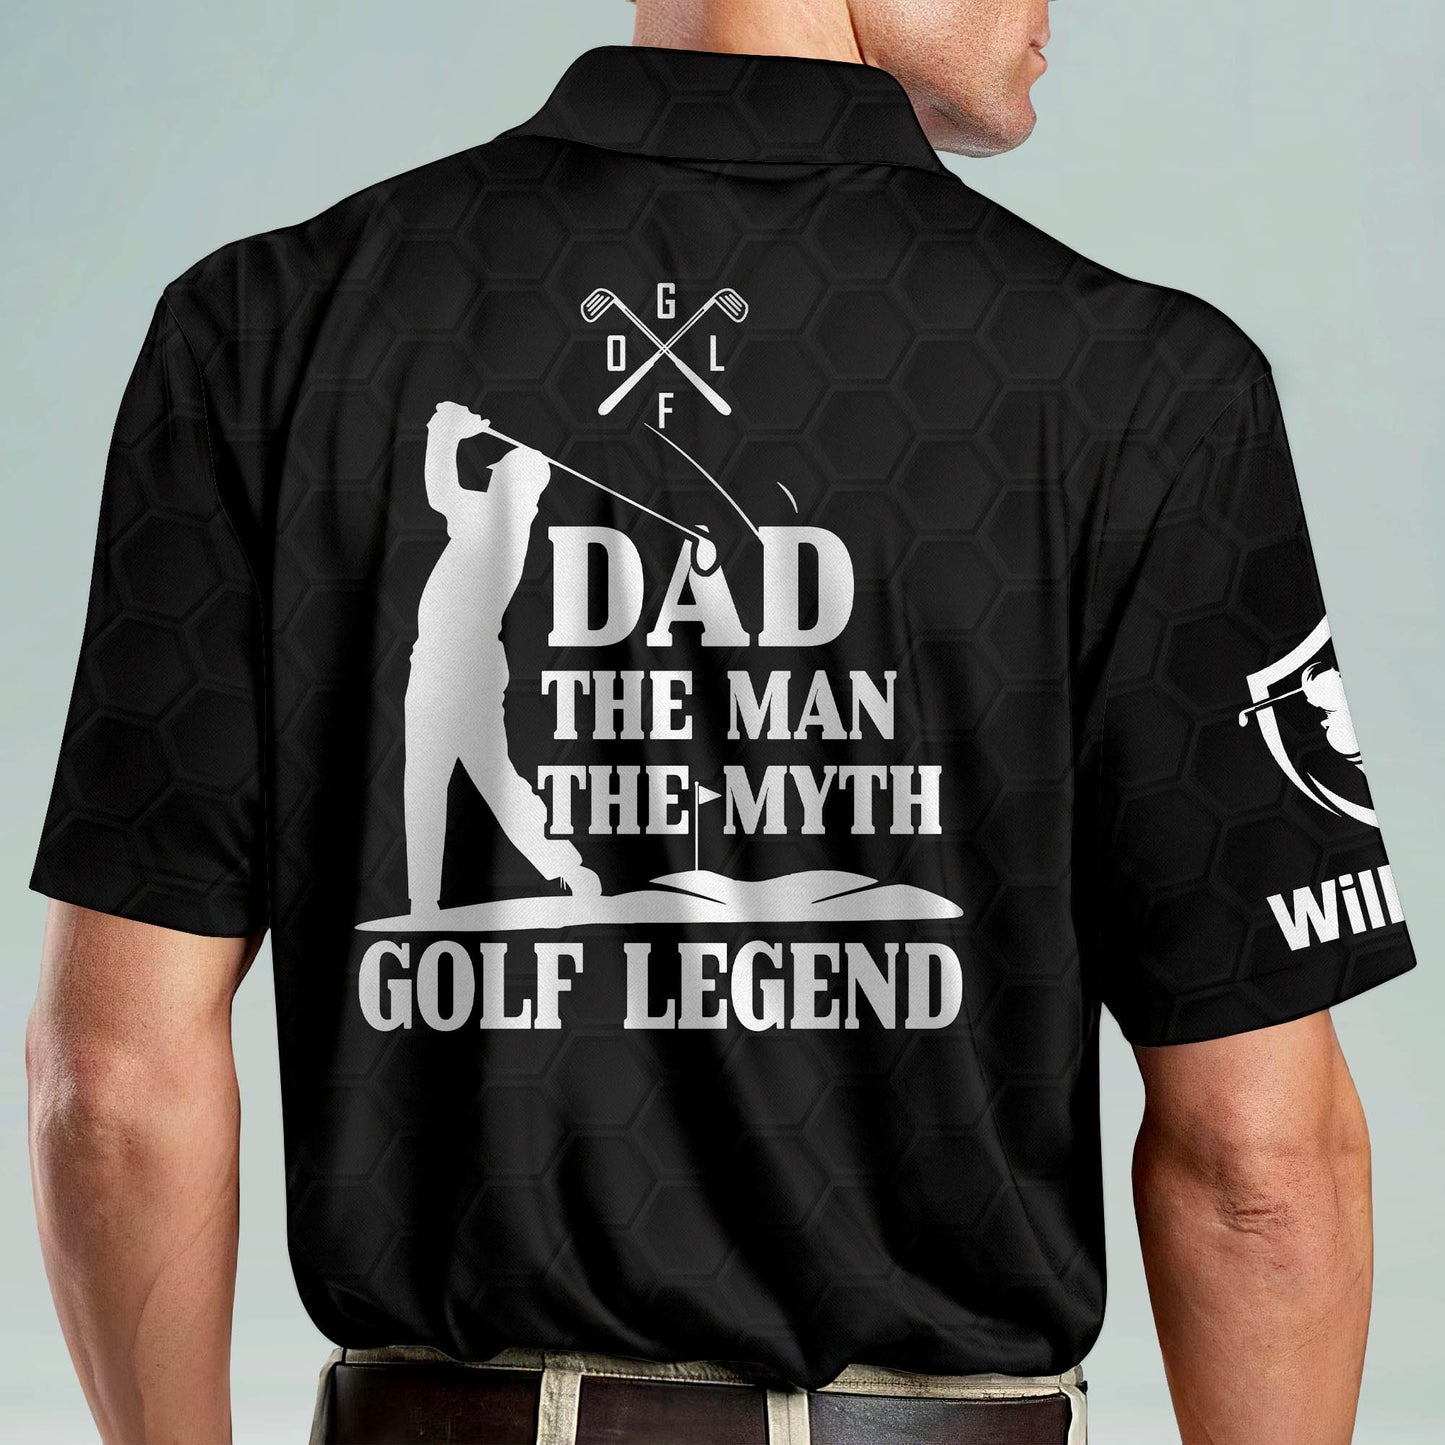 Dad The Man The Myth Golf Legend Golf Polo Shirt GM0181